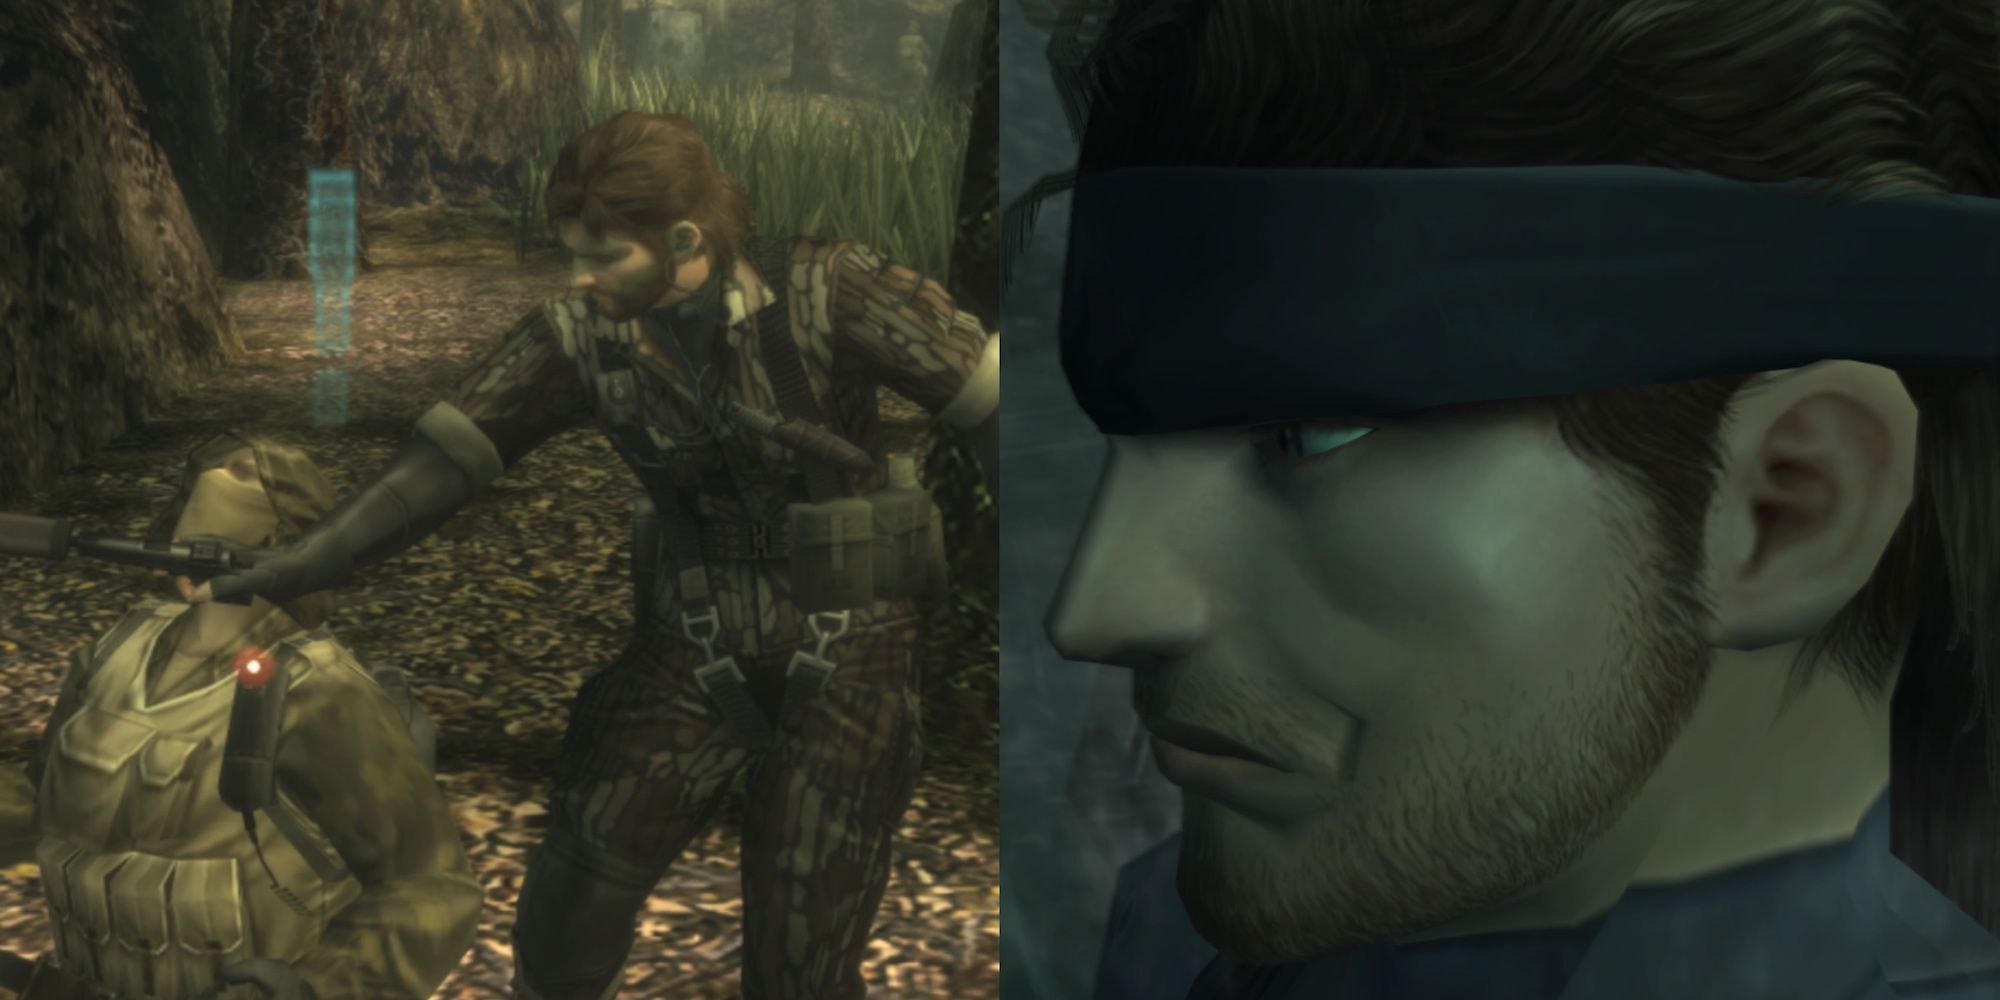 Metal Gear solid split image naked snake and solid snake-1